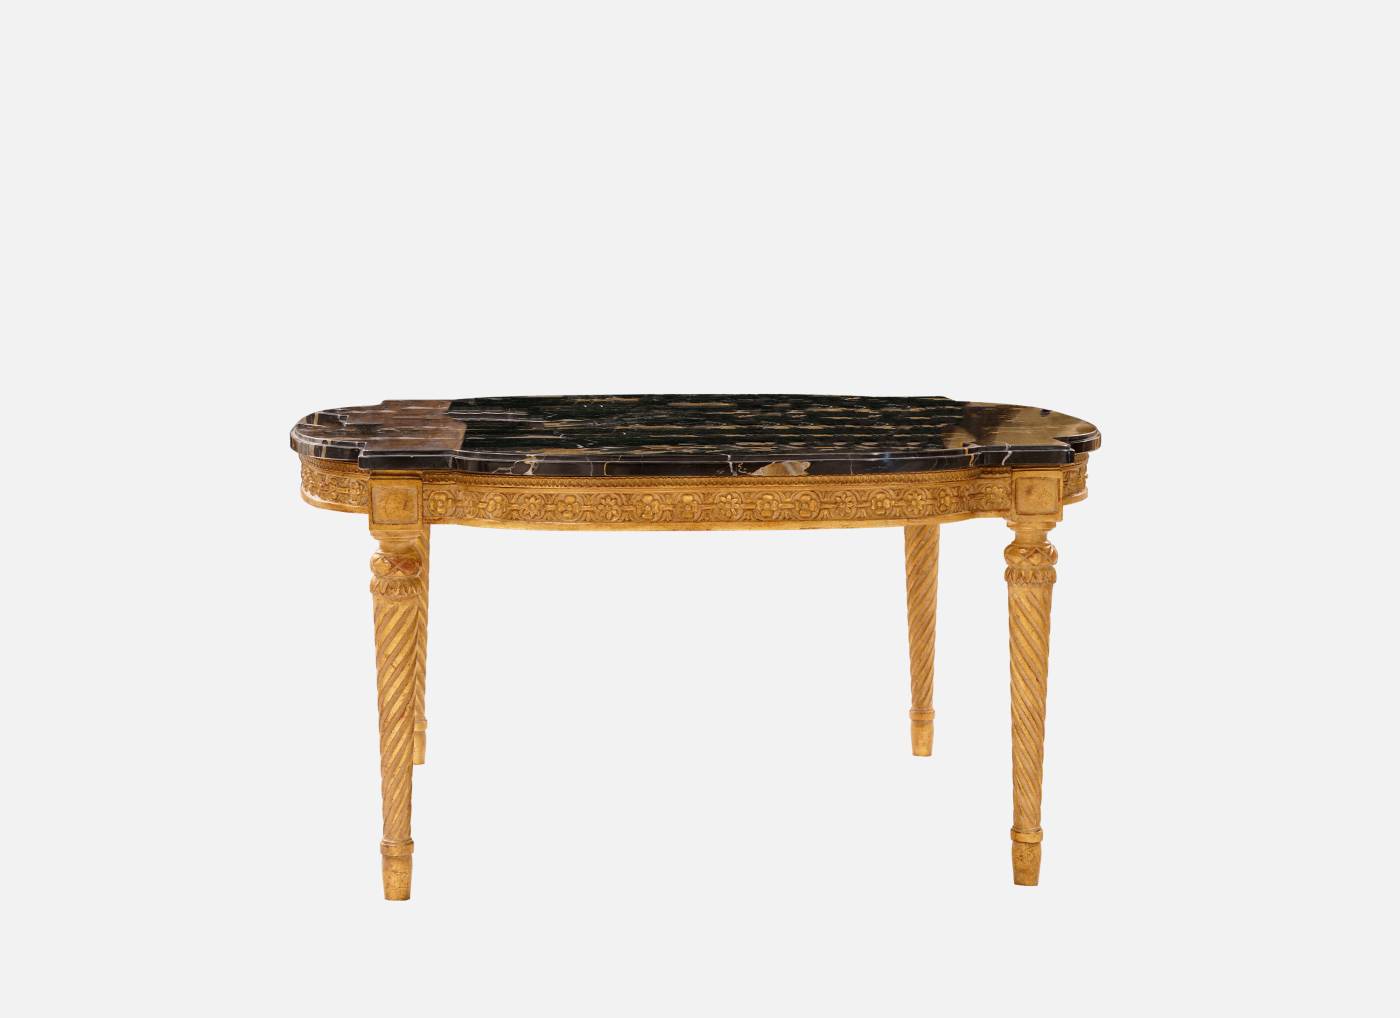 ART. 756-3 – C.G. Capelletti Italian Luxury Classic Small tables. Made in Italy classic interior design